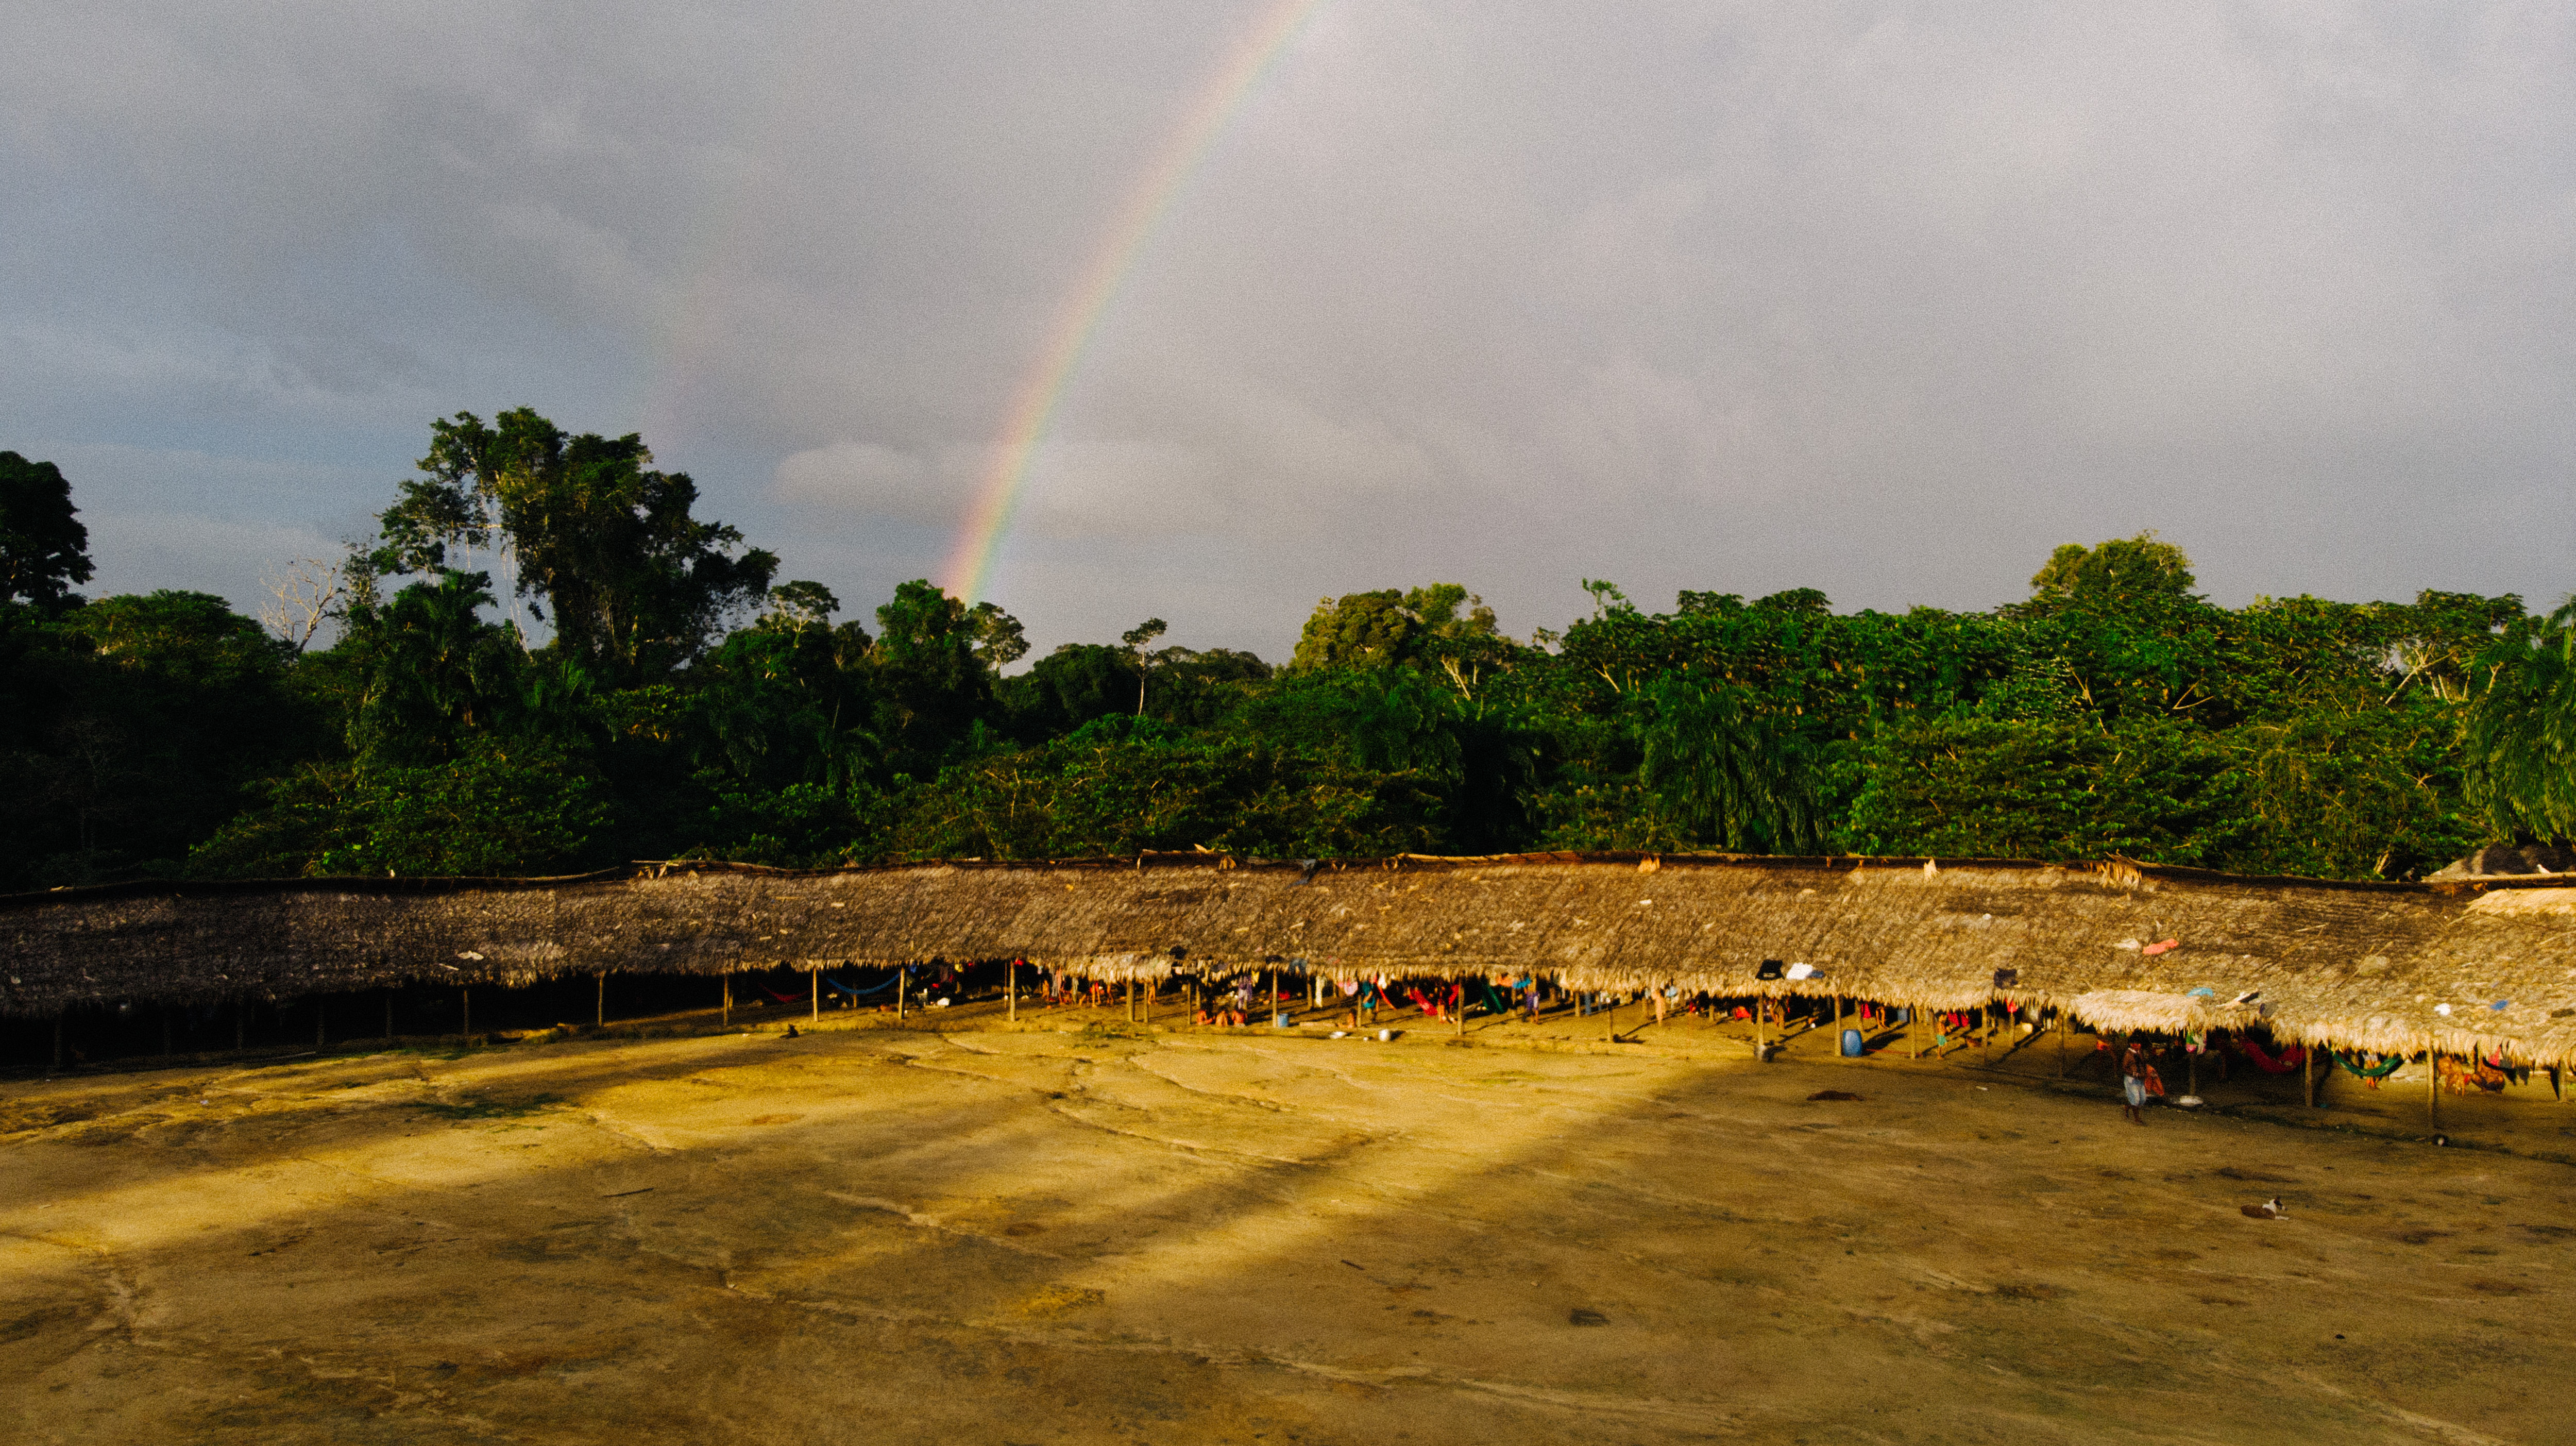 Arco-íris encerra o dia do aniversário de 30 anos da Terra Indígena Yanomami|Christian Braga/ISA